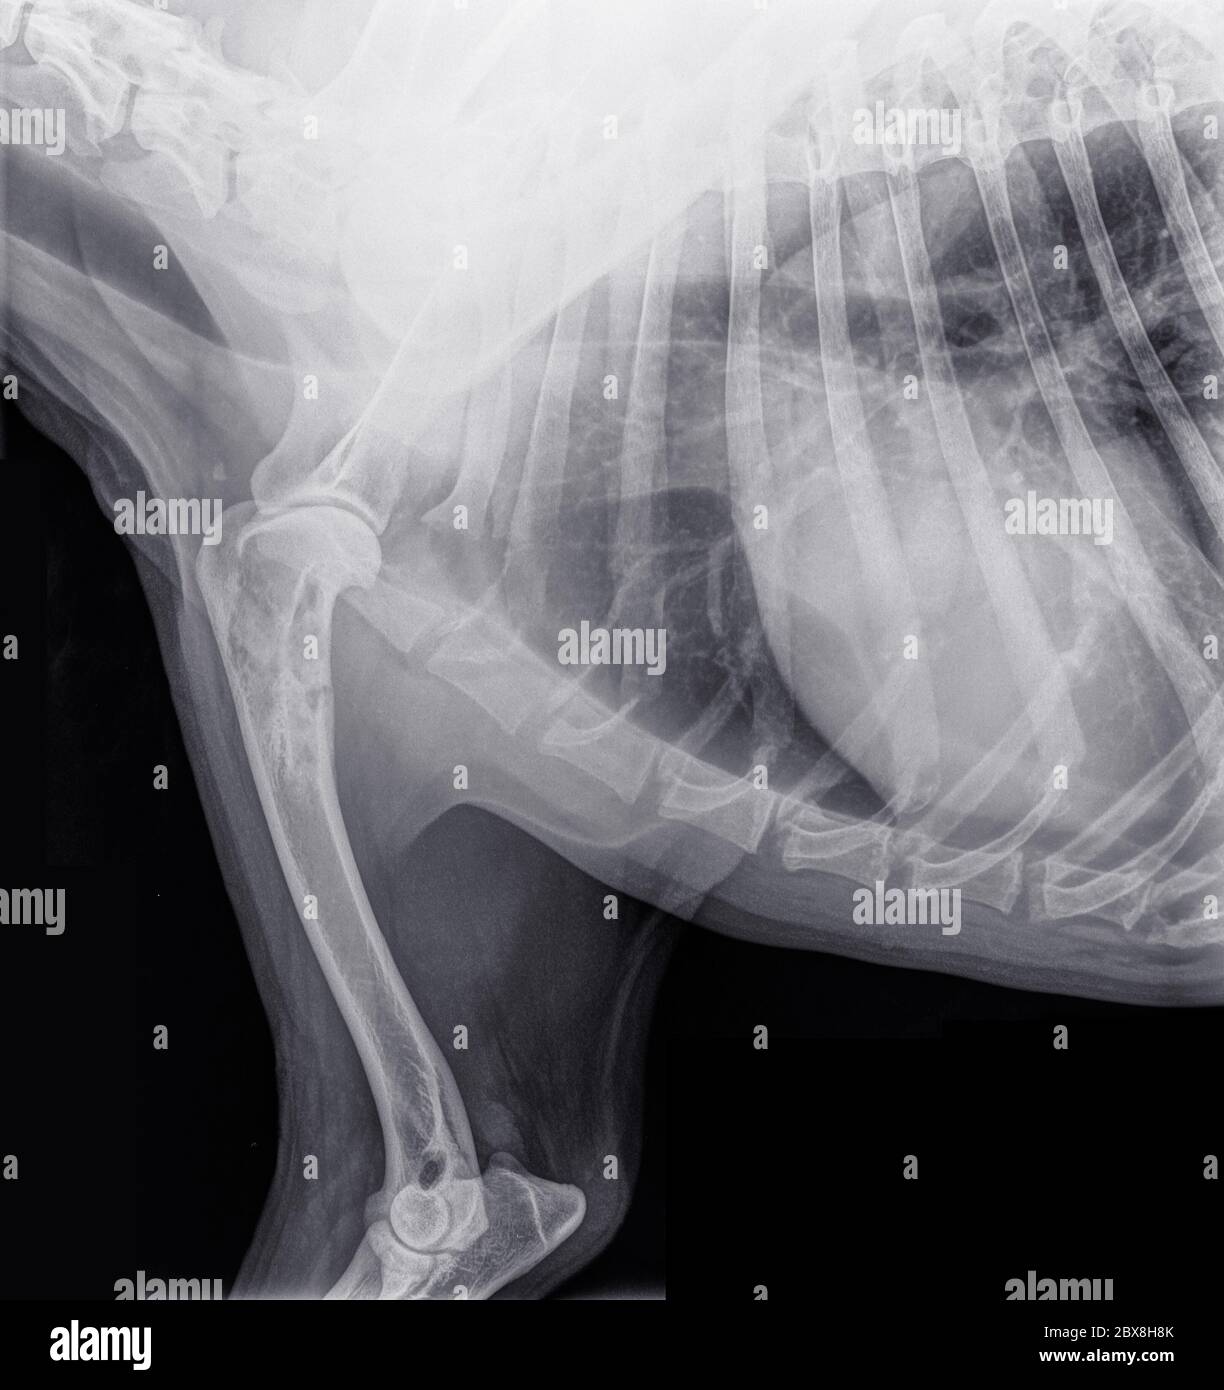 Raggi X laterali della parte anteriore di un cane con cancro alle ossa (osteosarcoma) nella parte superiore dell'omero. Isolato su nero Foto Stock